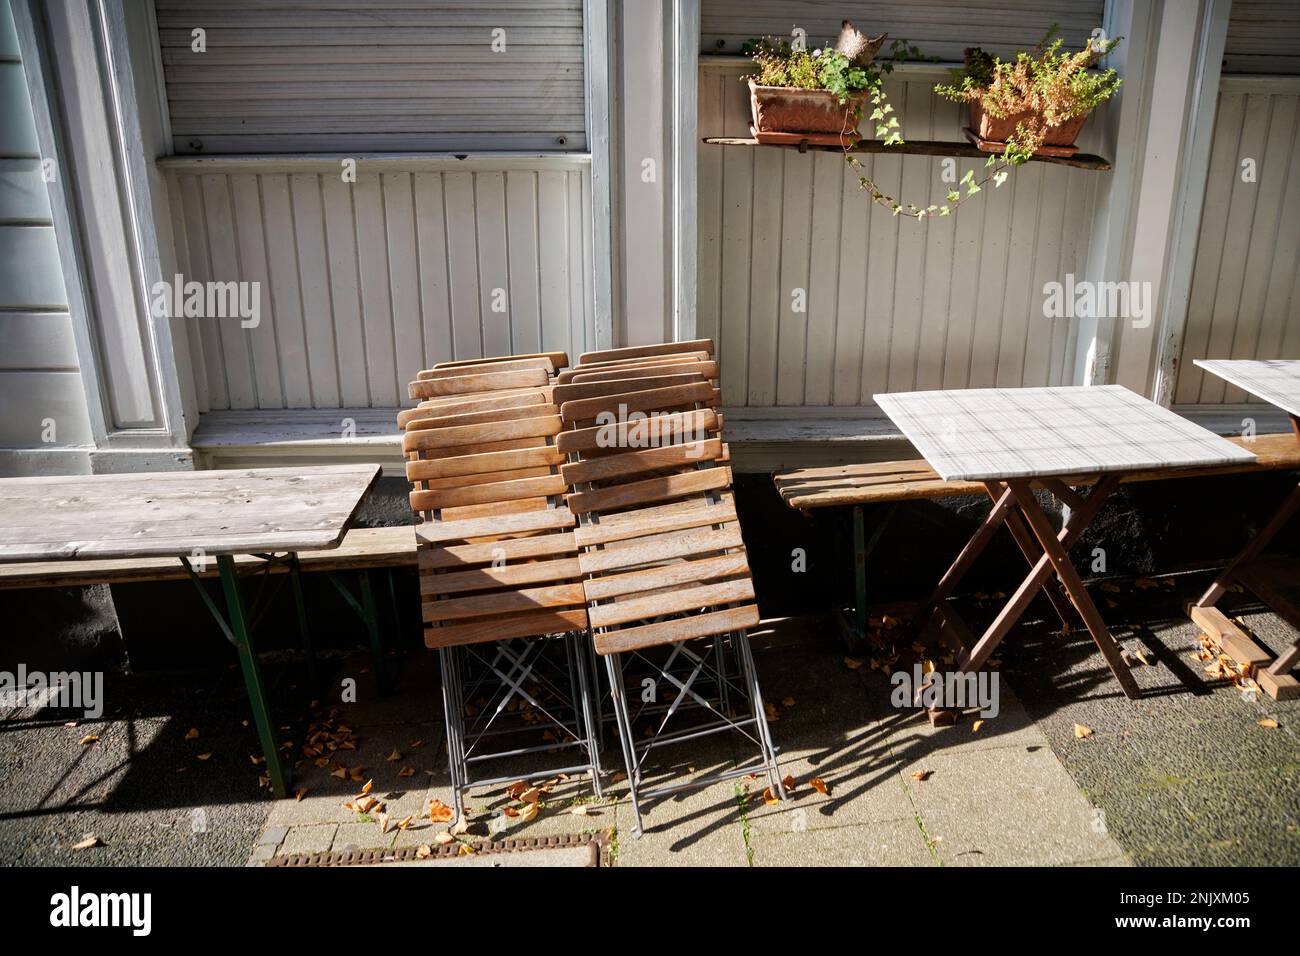 Zusammengeklappte Holzstühle im Aussengastrobereich in der Altstadt Hattingen. Sie werden von der Sonne beschienen. Stock Photo